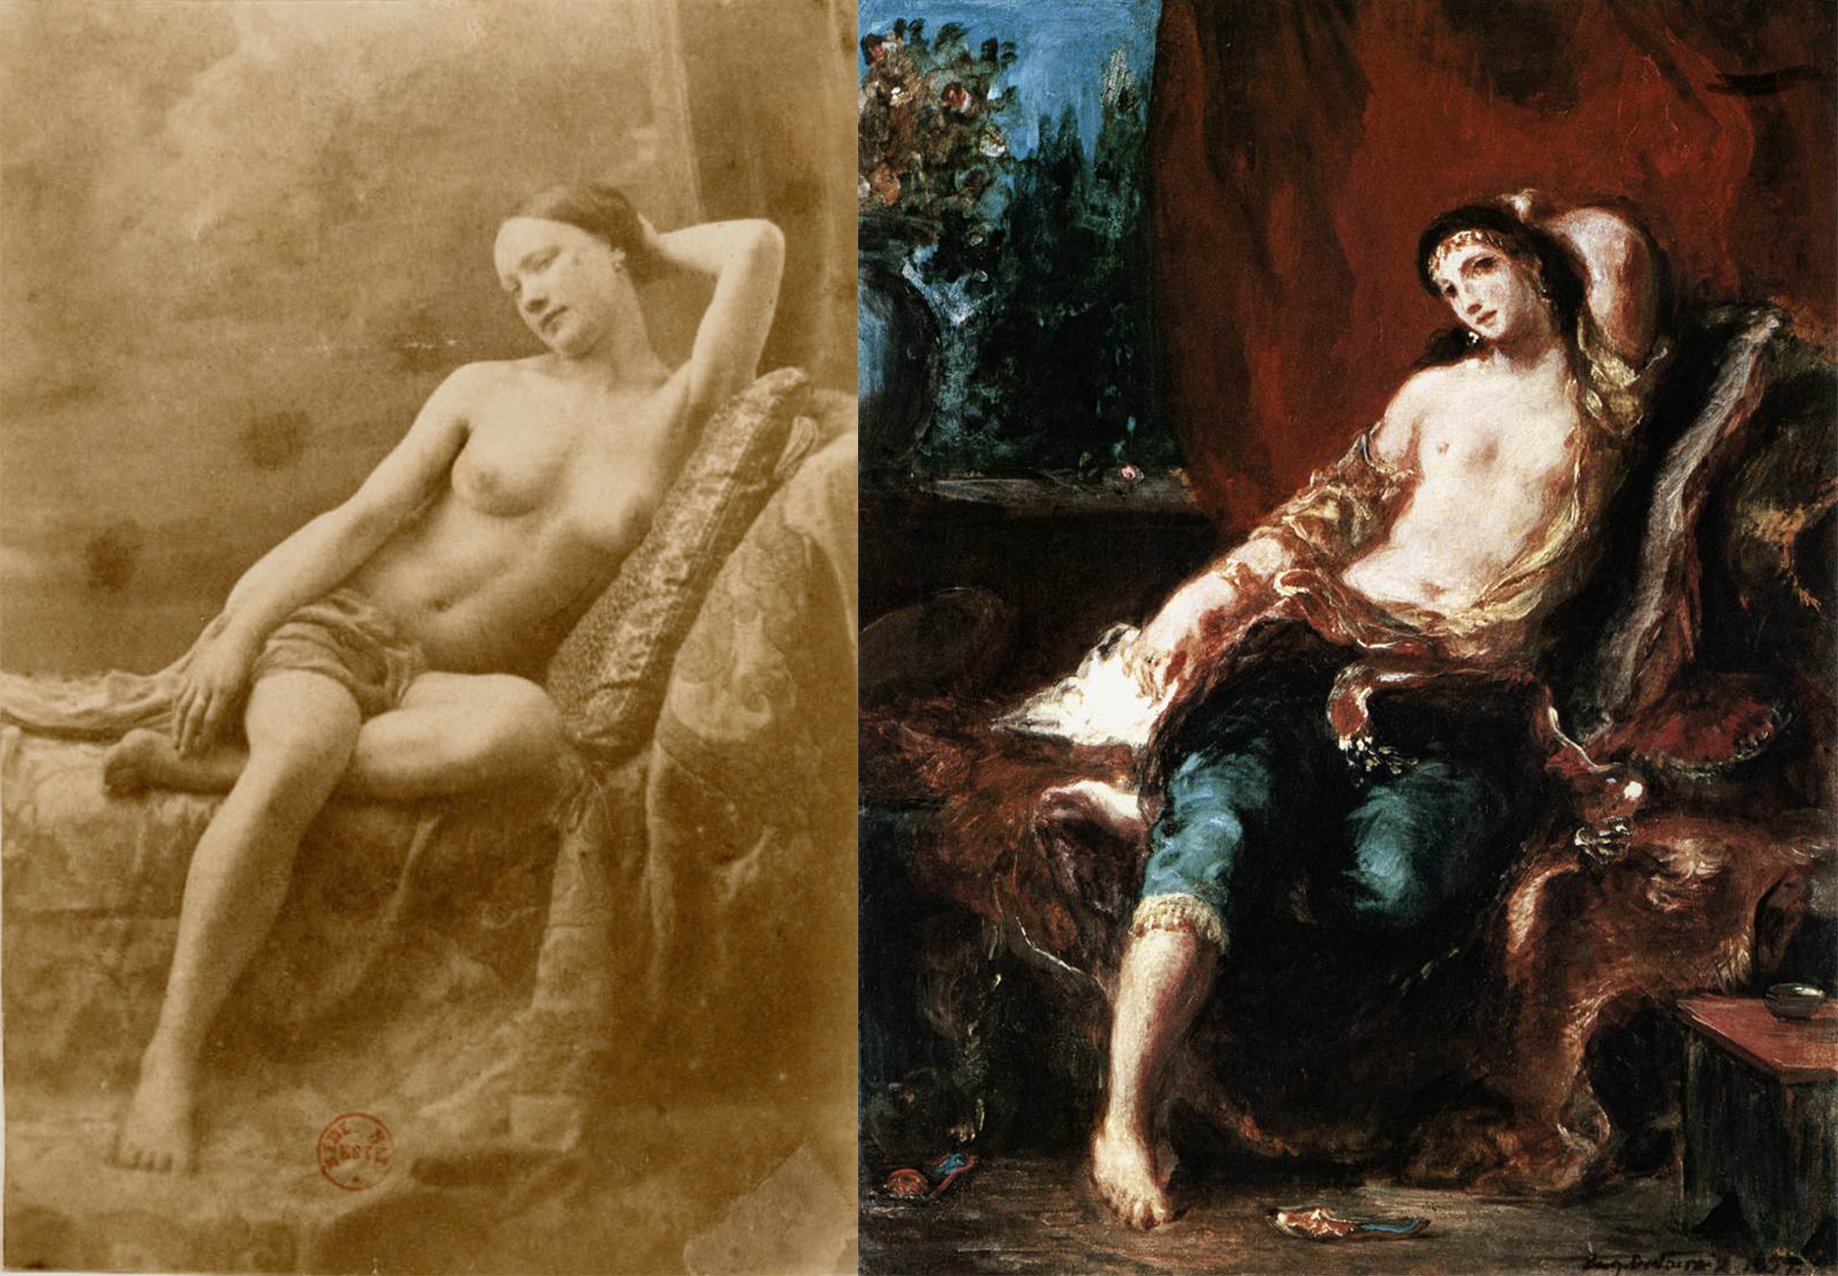 Cariye / Cariye by Eugène Durieu / Eugène Delacroix - 1833/1857 özel koleksiyon